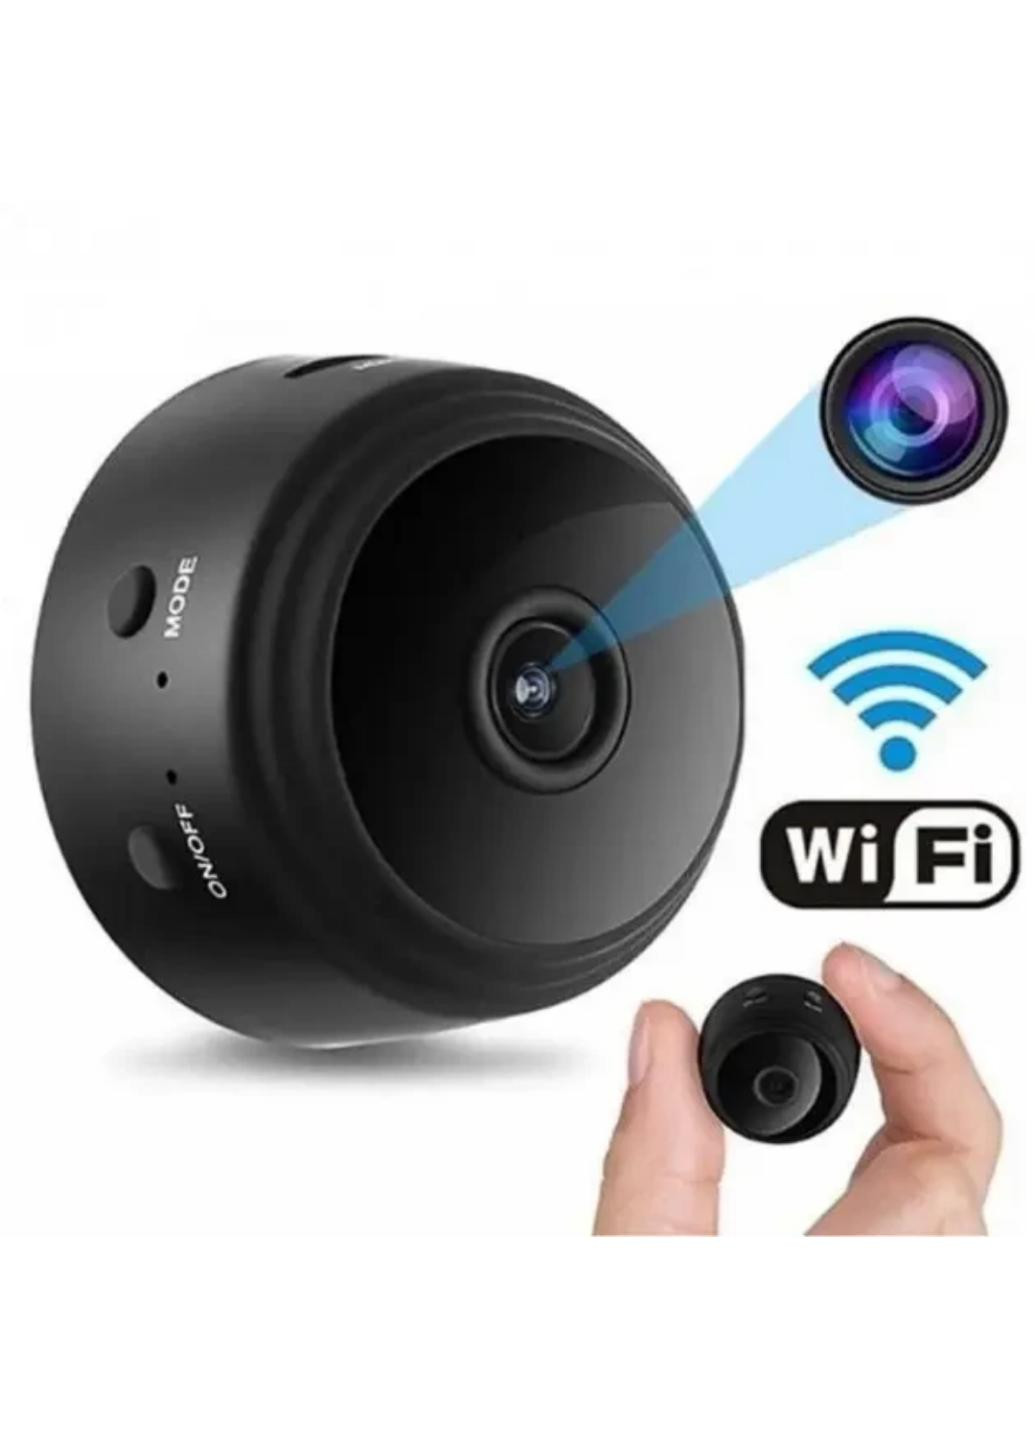 Мініатюрна IP P2P HD камера з Wi-Fi зі зйомкою нічного відео 4,5*4,5*2,5 см XO a9 (259138897)